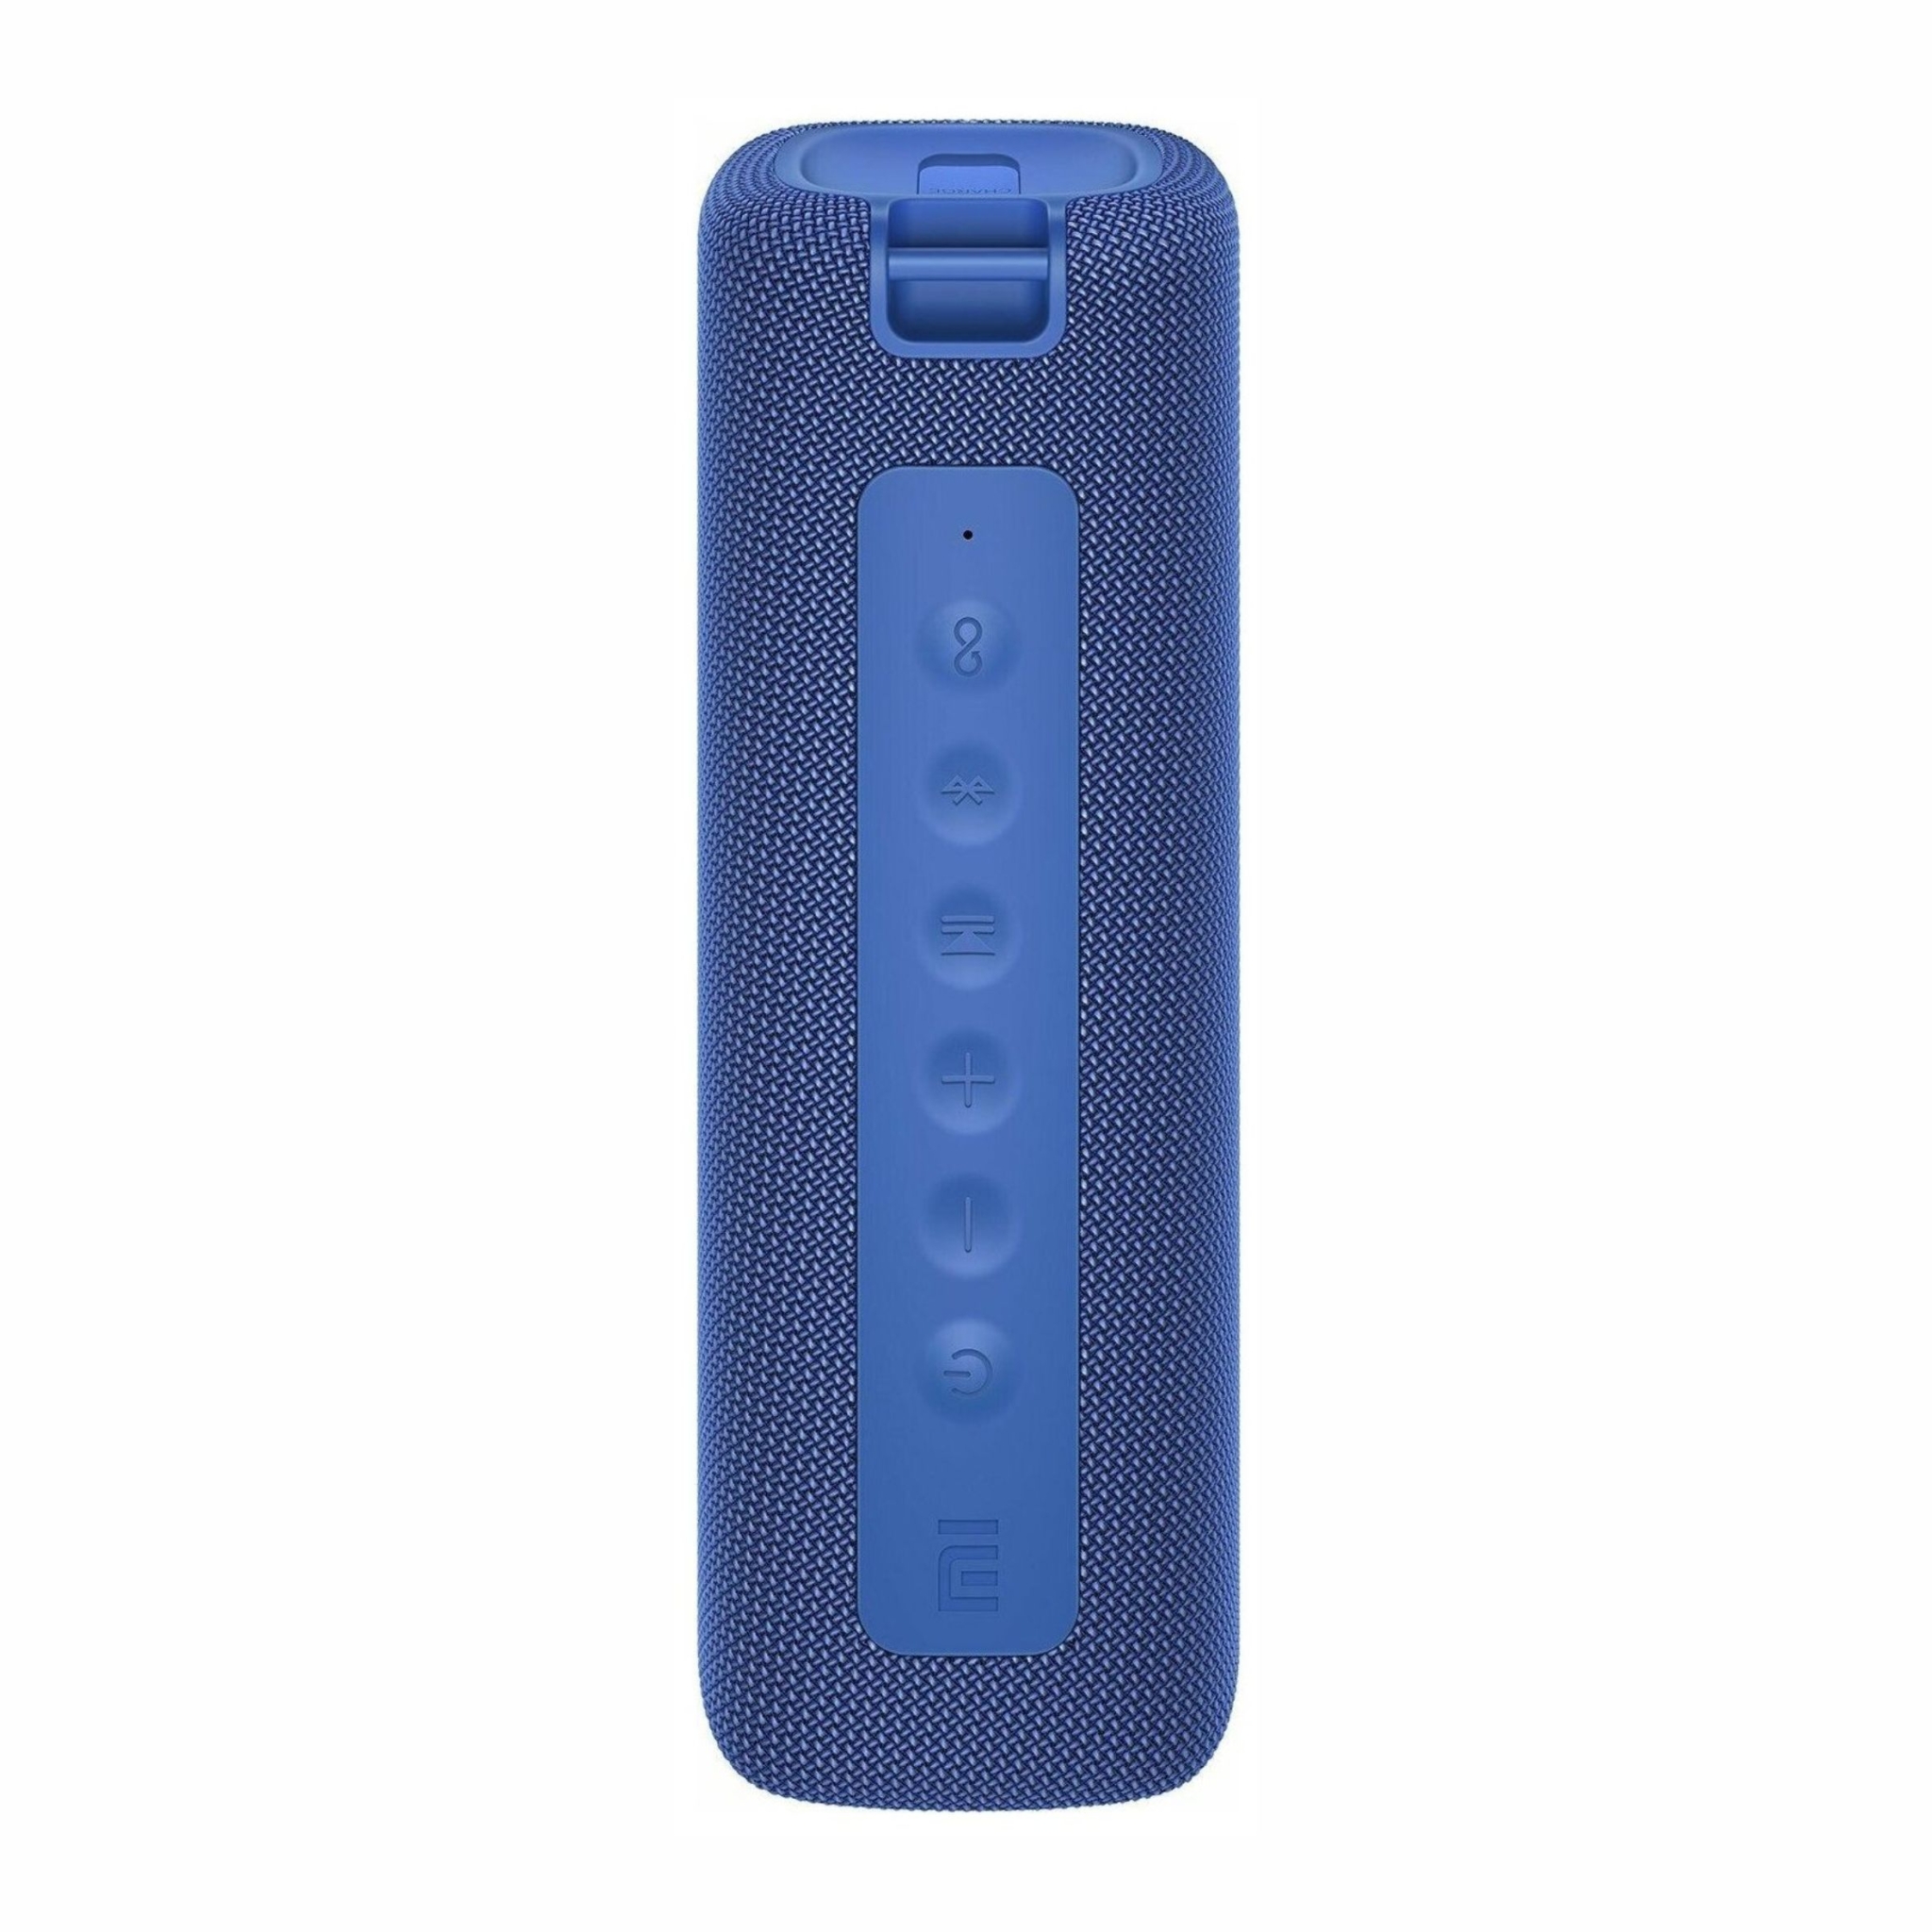 Портативная колонка Xiaomi Mi Portable Bluetooth Speaker 16W, синий, синий, пластик, текстиль